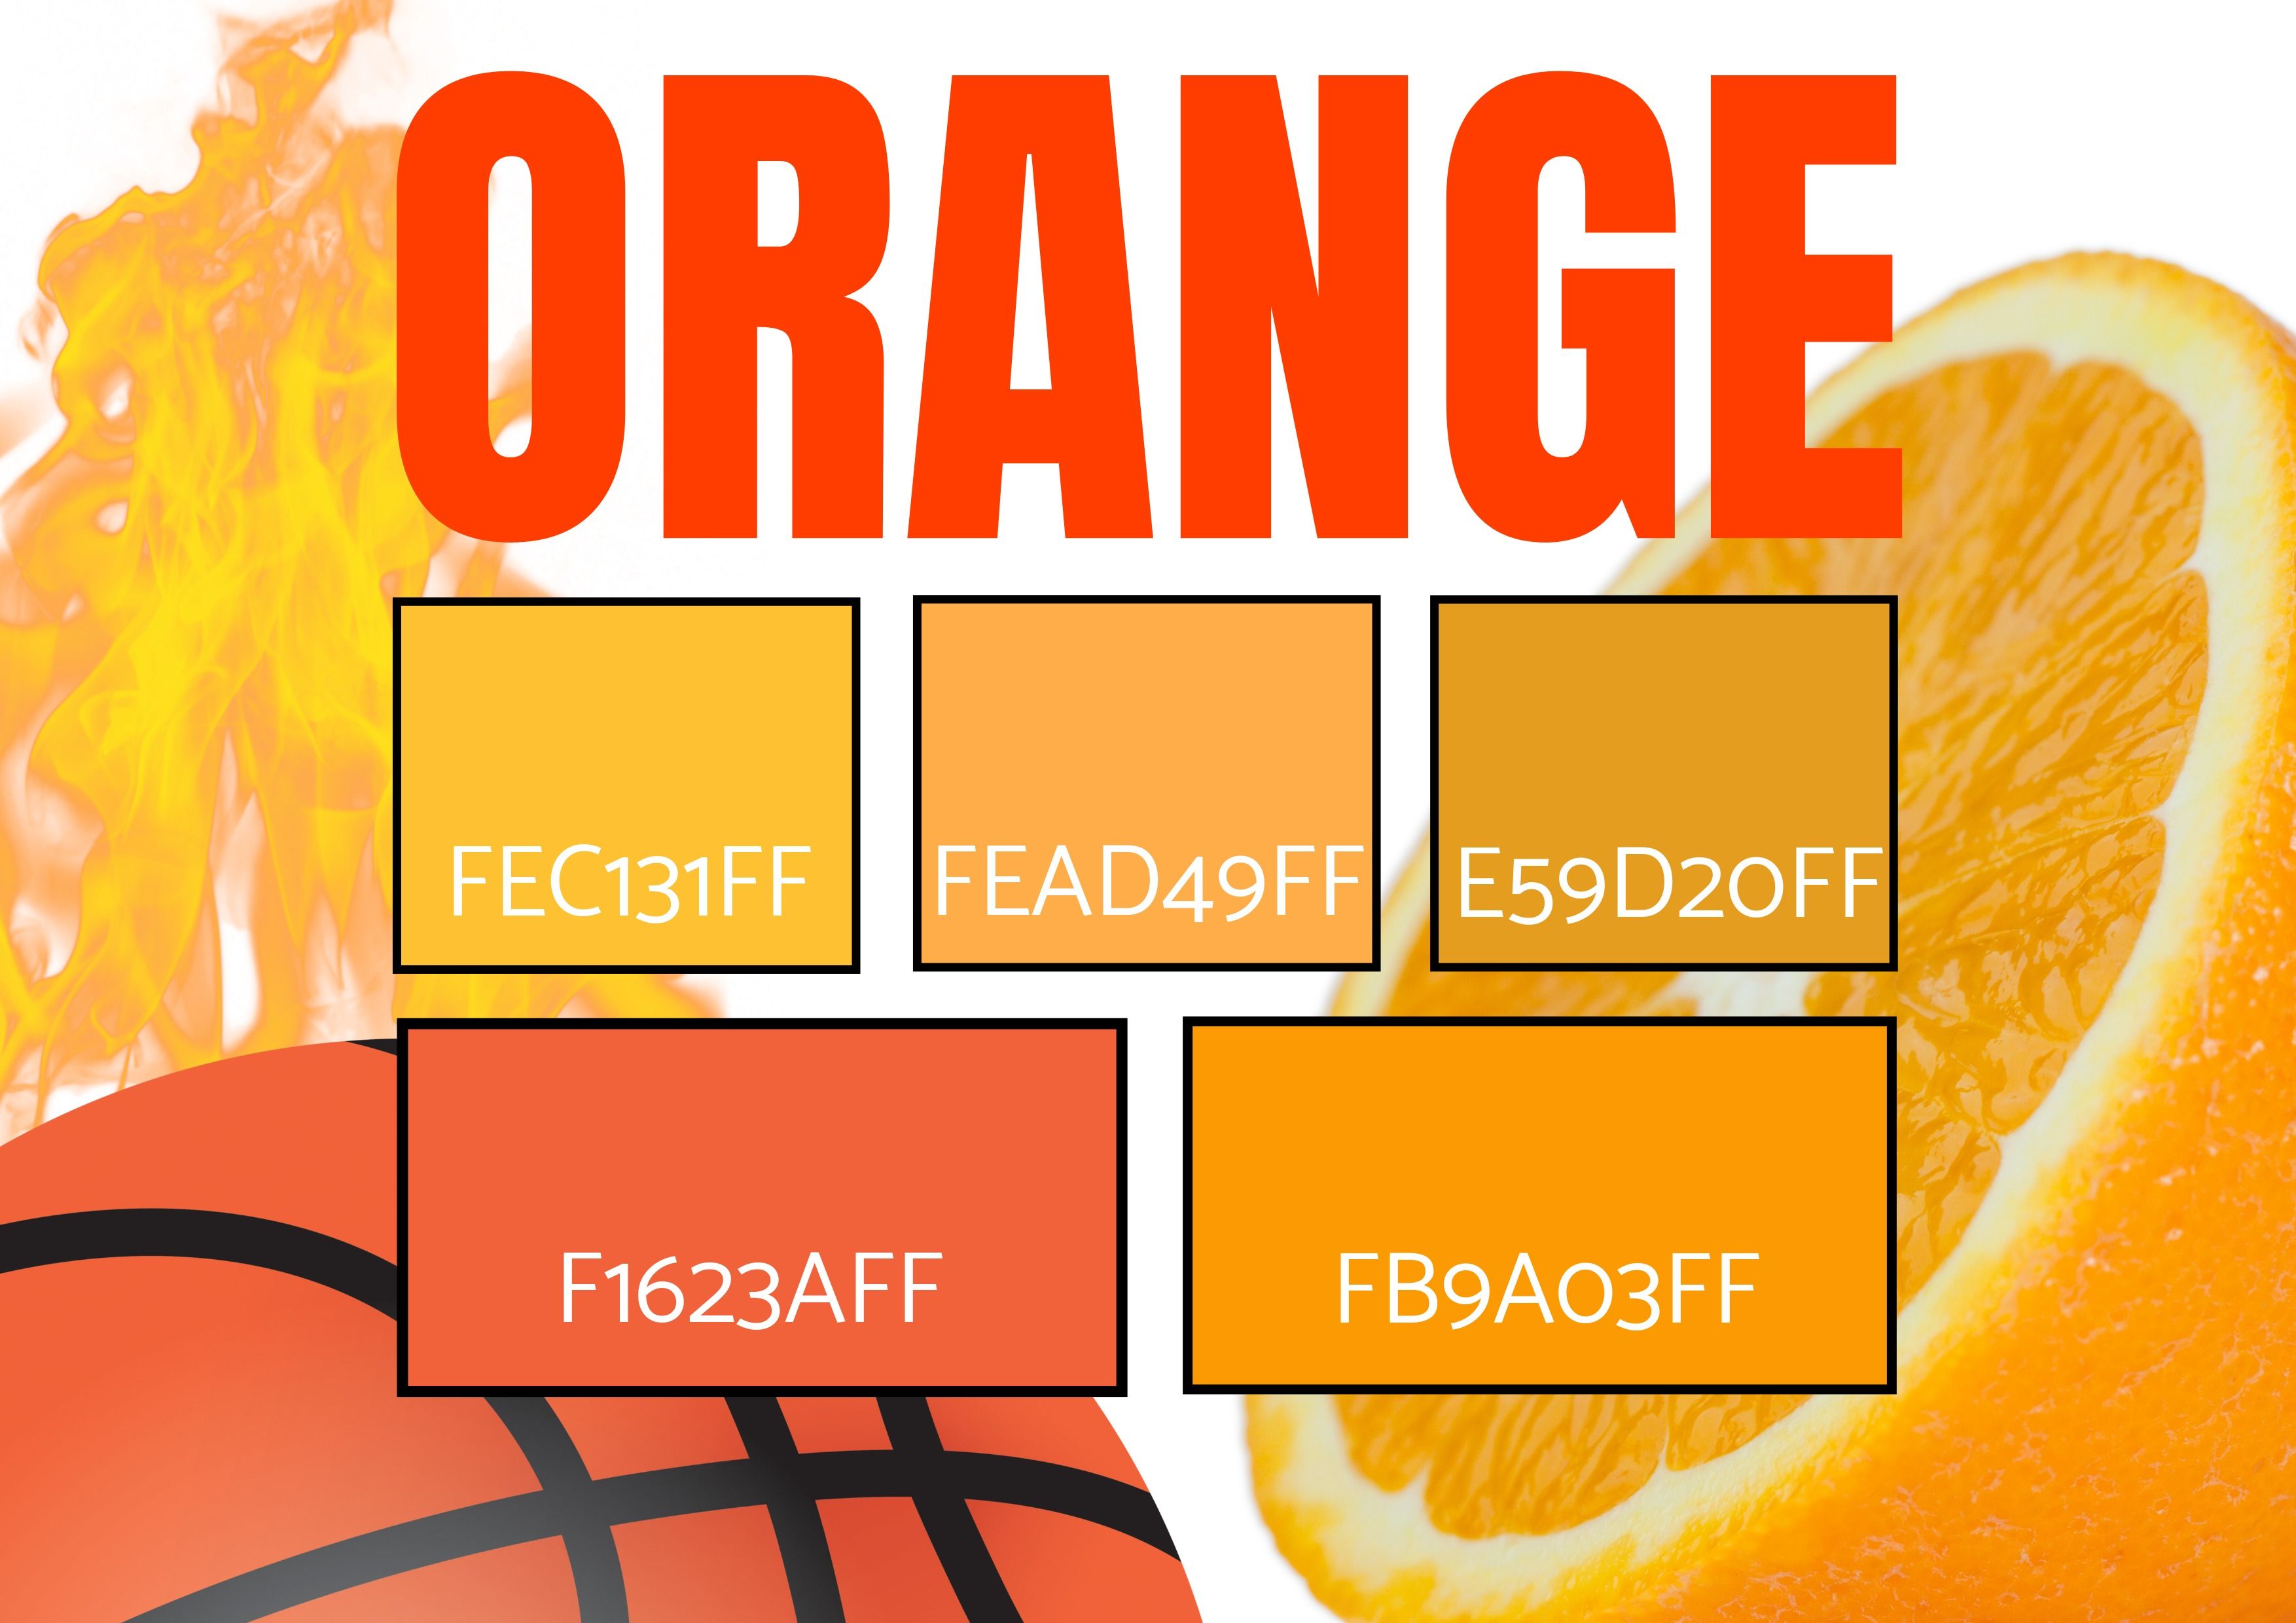 Seleção de 5 tons de laranja com imagens de fogo, uma bola de basquete e uma laranja - simbolismo